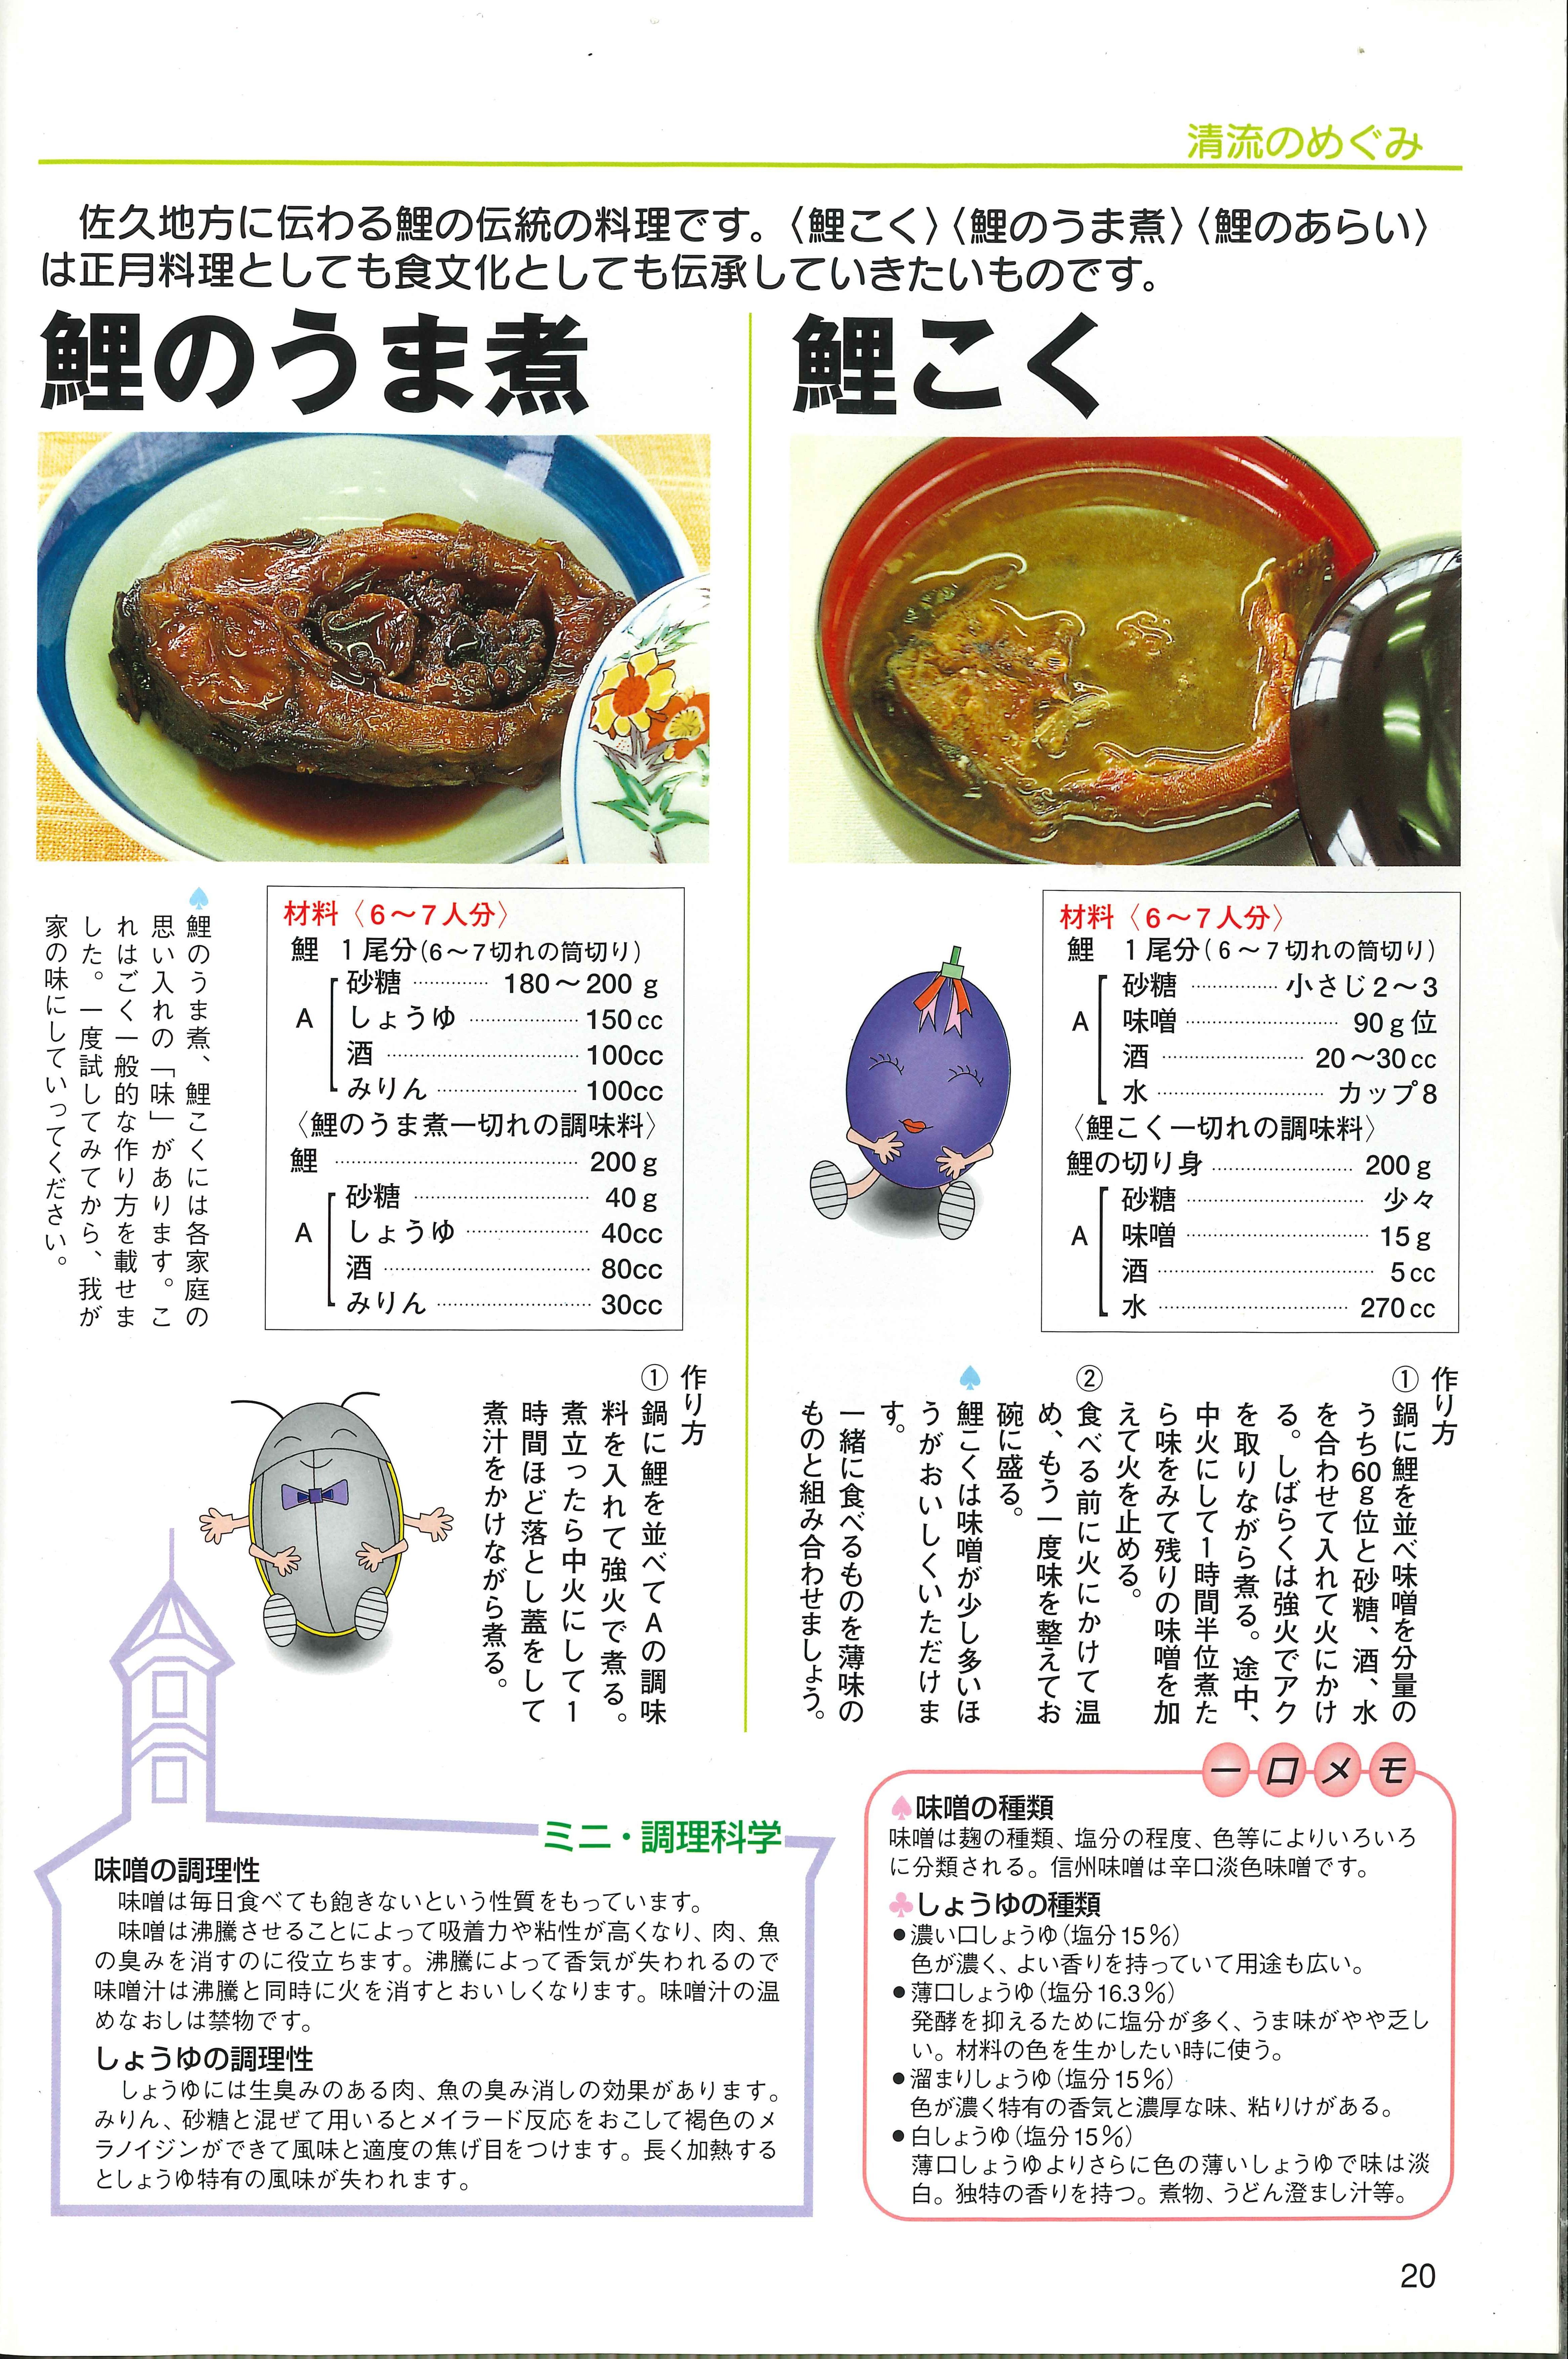 イメージ：今年も佐久の食文化でお歳とりを！～鯉のうま煮、鯉こくレシピ紹介～